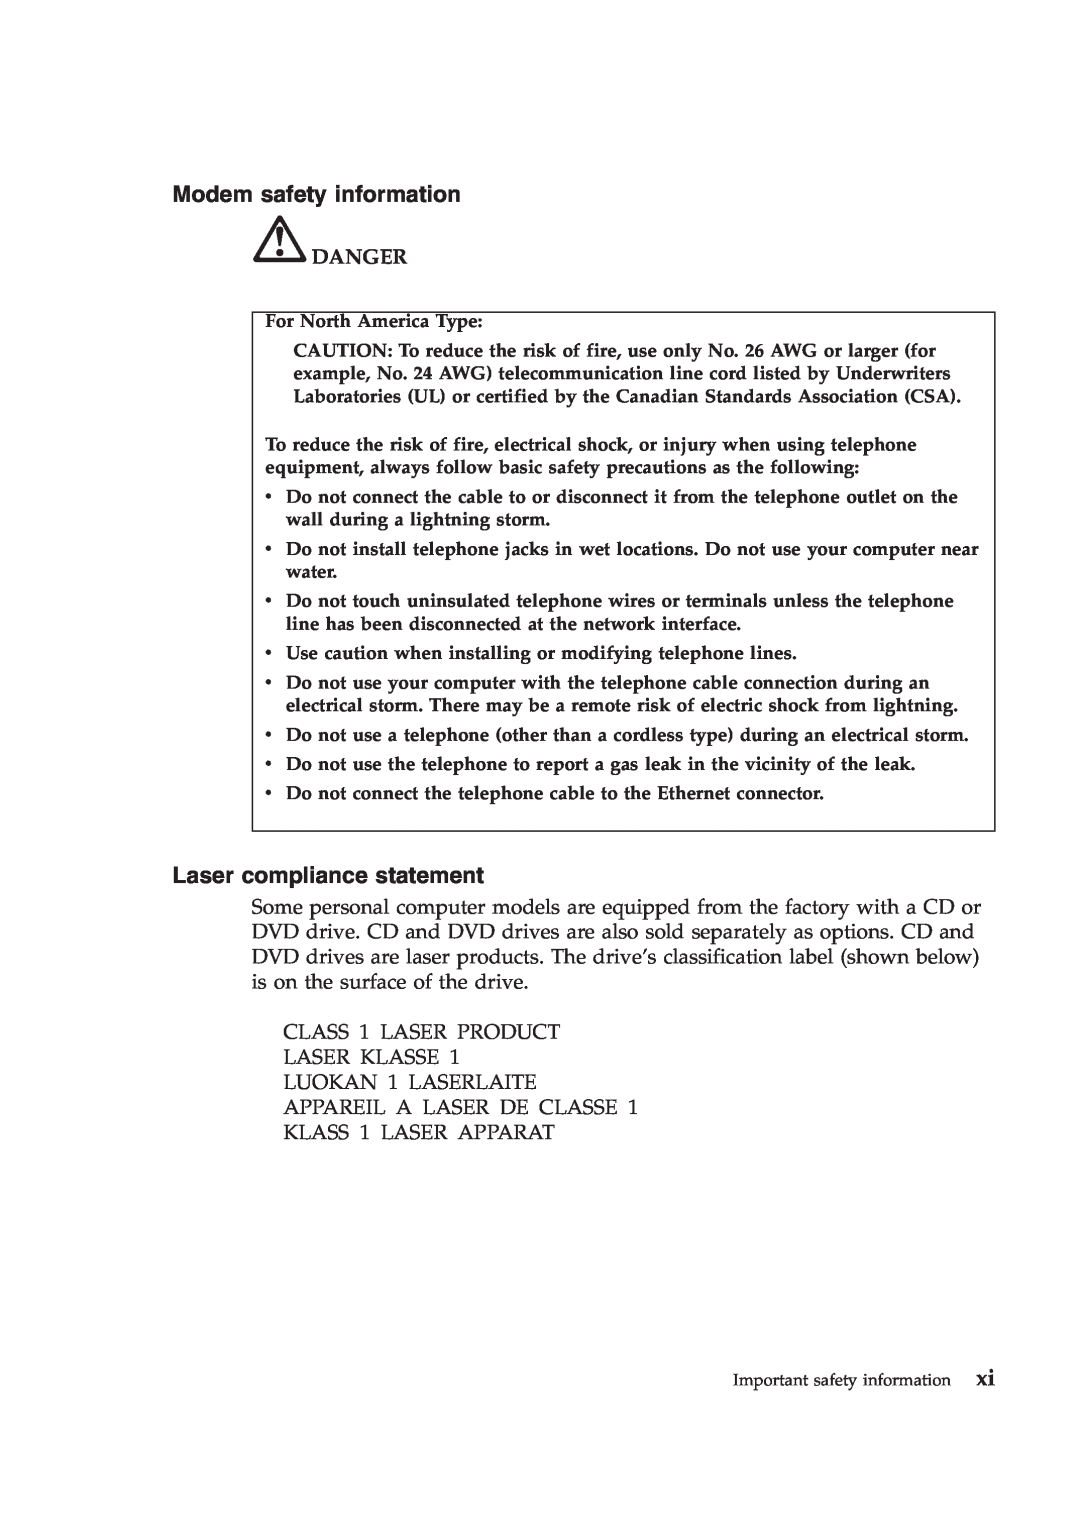 Lenovo T410S manual Modem safety information, Laser compliance statement, Danger, CLASS 1 LASER PRODUCT LASER KLASSE 